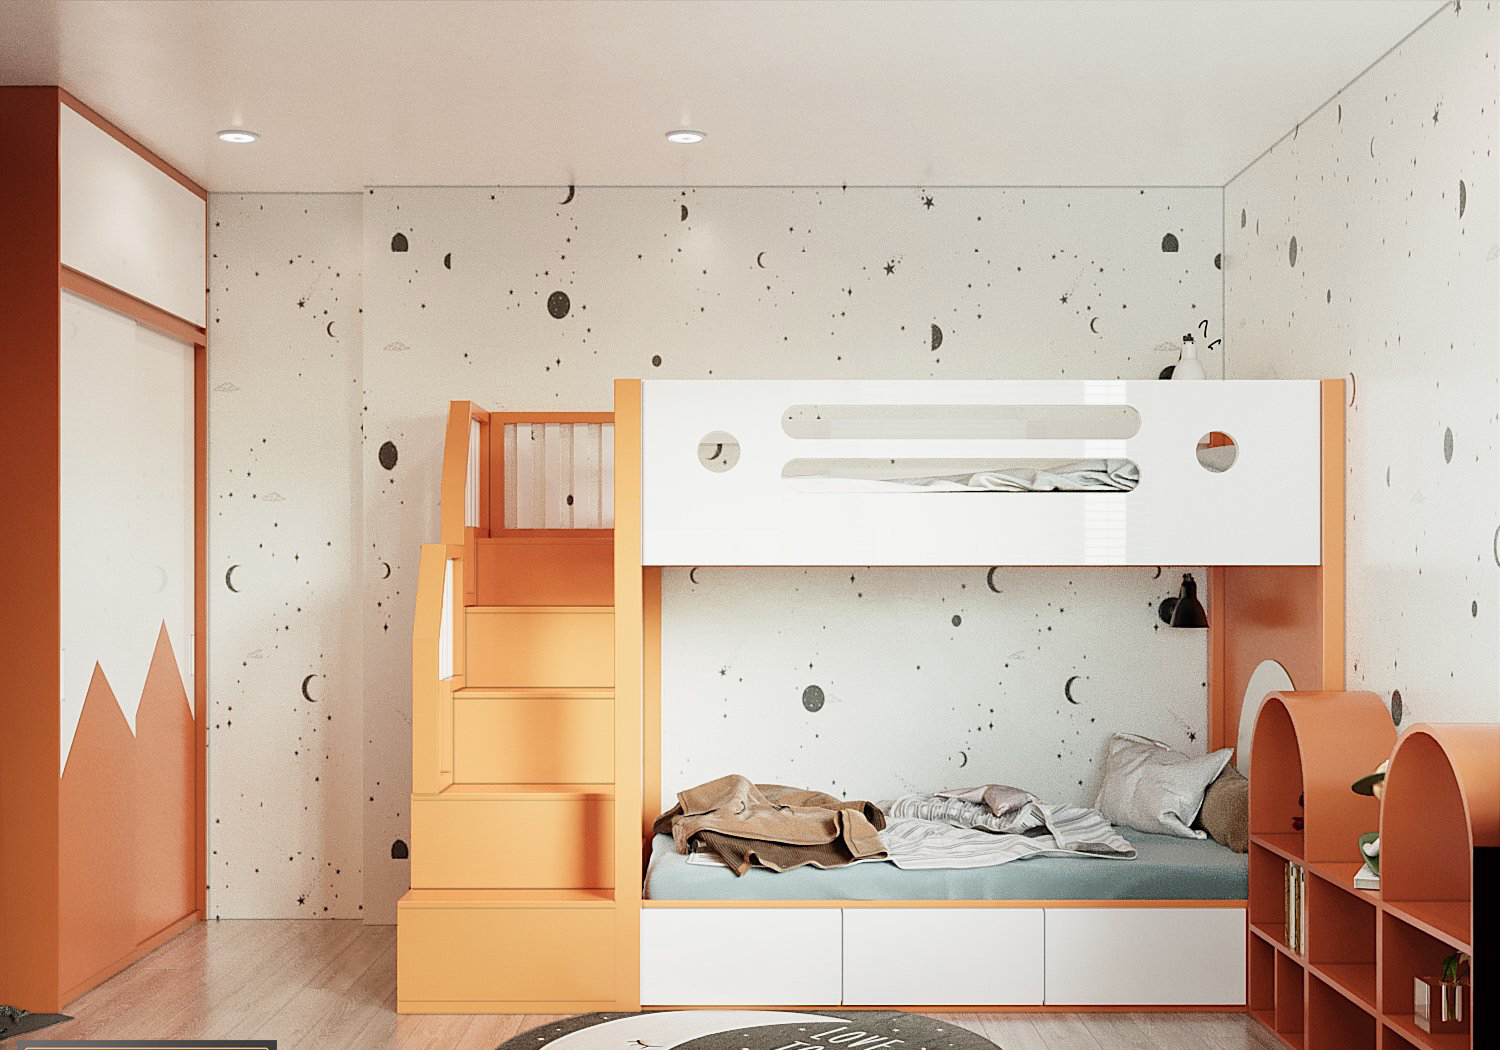 hình ảnh toàn cảnh phòng ngủ trẻ em đẹp với giường tầng, bậc thang gỗ, góc vui chơi, giấy dán tường màu trắng, họa tiết trăng sao